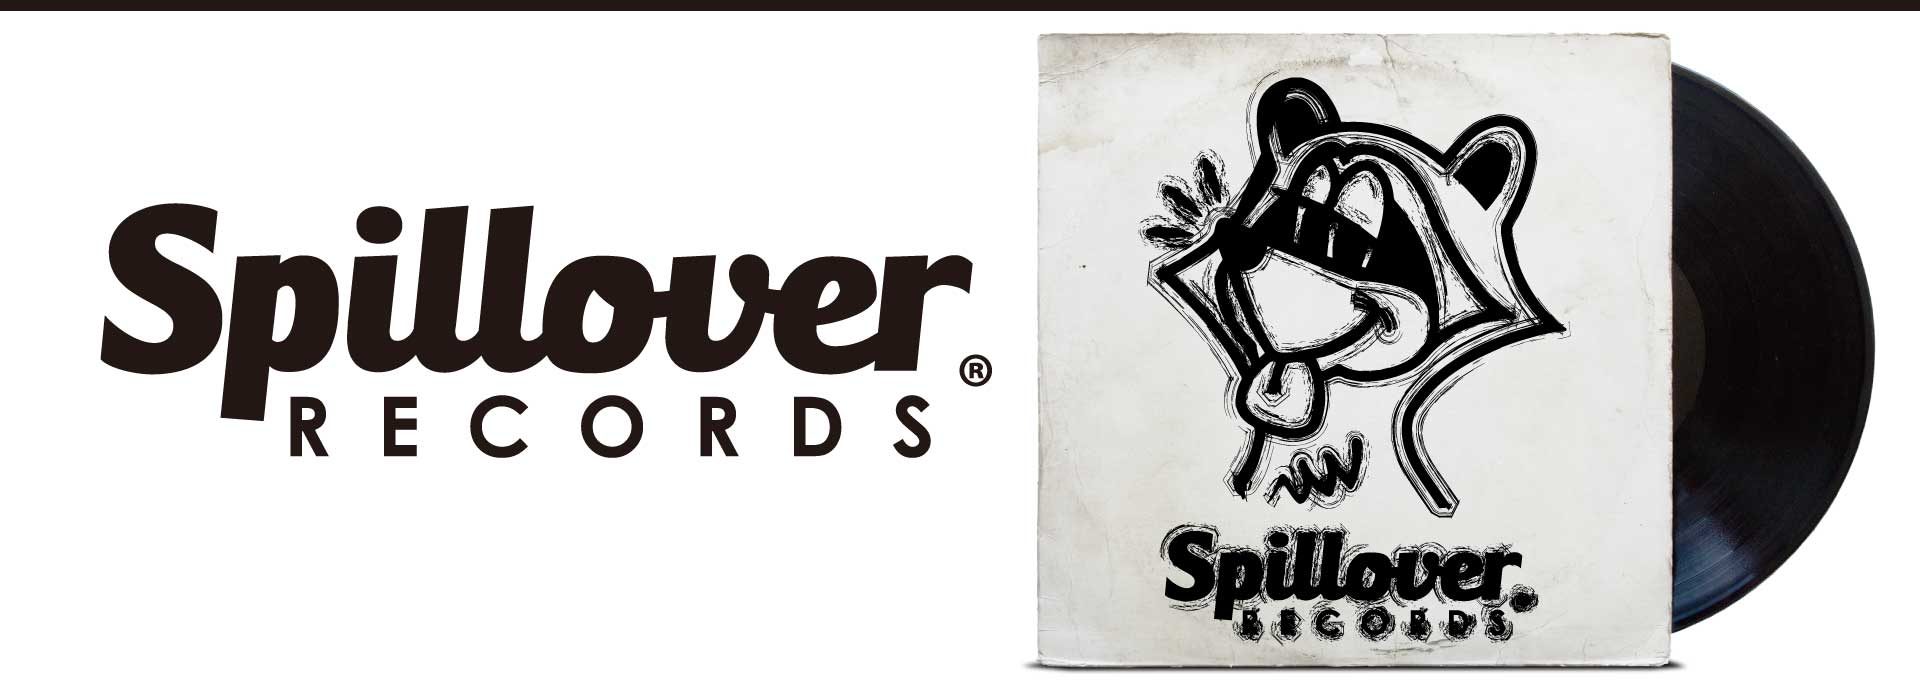 Spillover Records